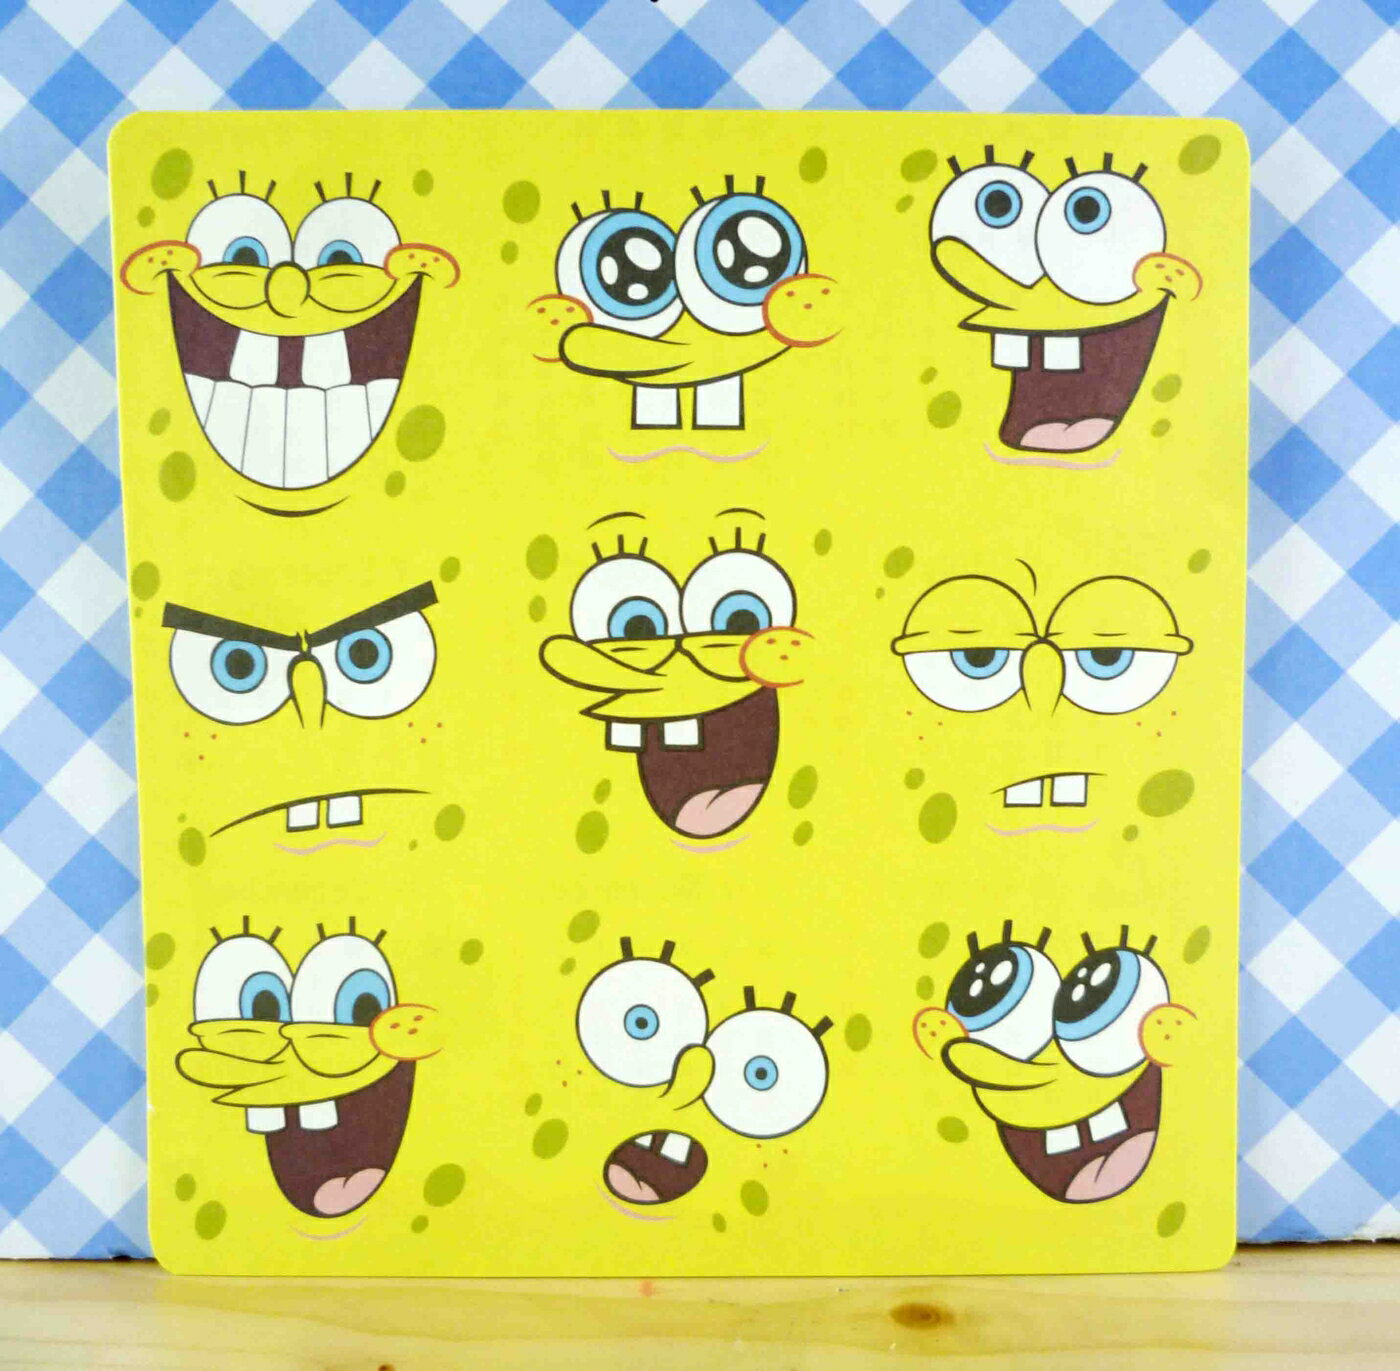 【震撼精品百貨】SpongeBob SquarePant海棉寶寶 卡片-綜合表情圖案 震撼日式精品百貨